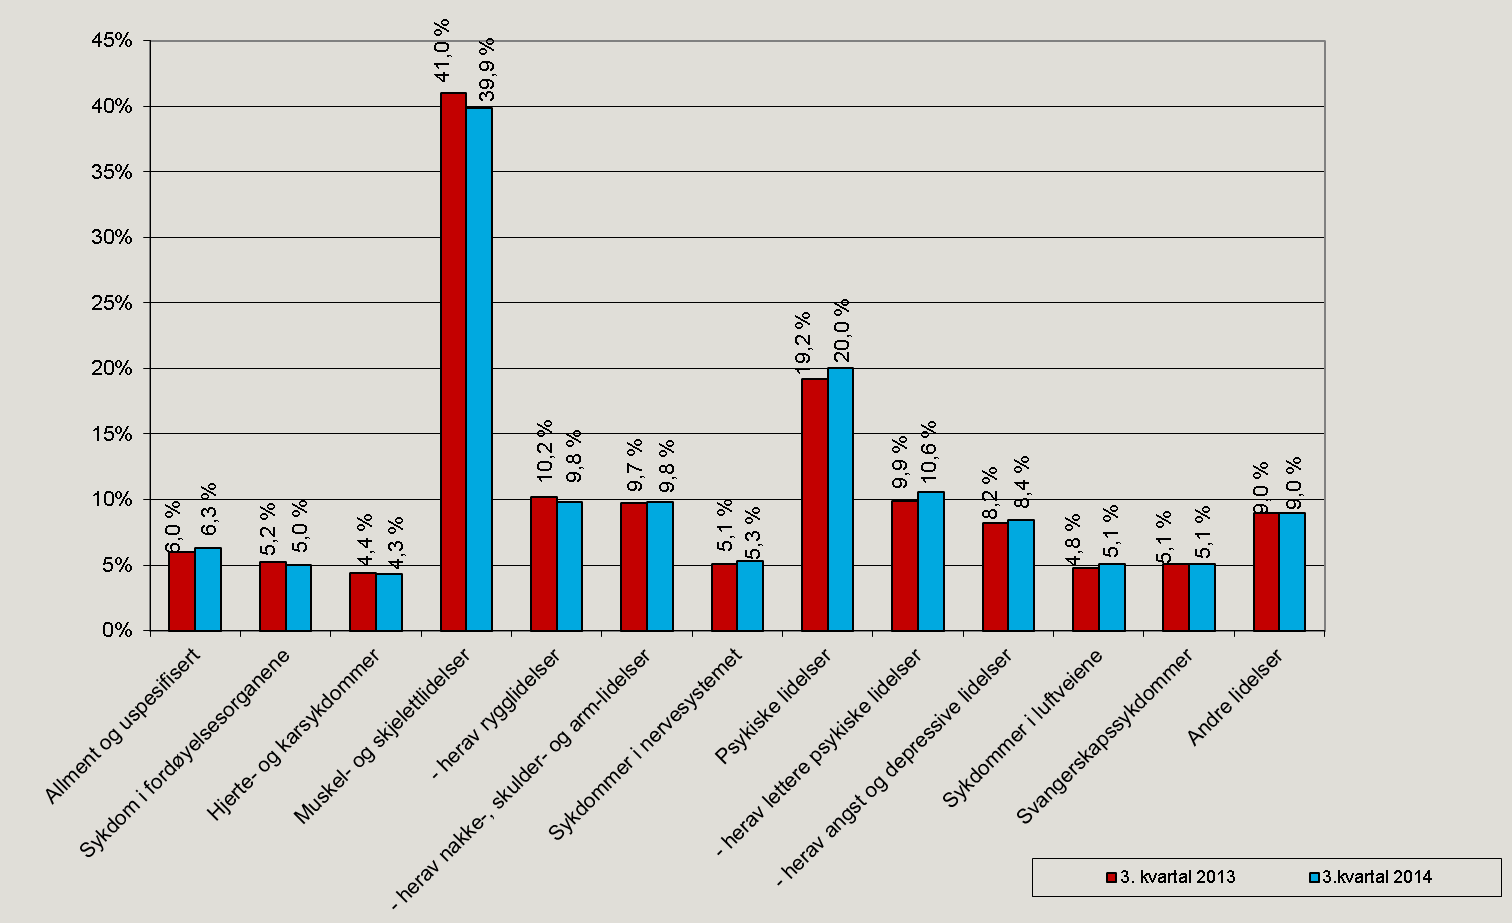 Figur 13. Legemeldte sykefraværsdagsverk etter diagnose, 3. kvartal 2013 og 3. kvartal 2014. Prosent.